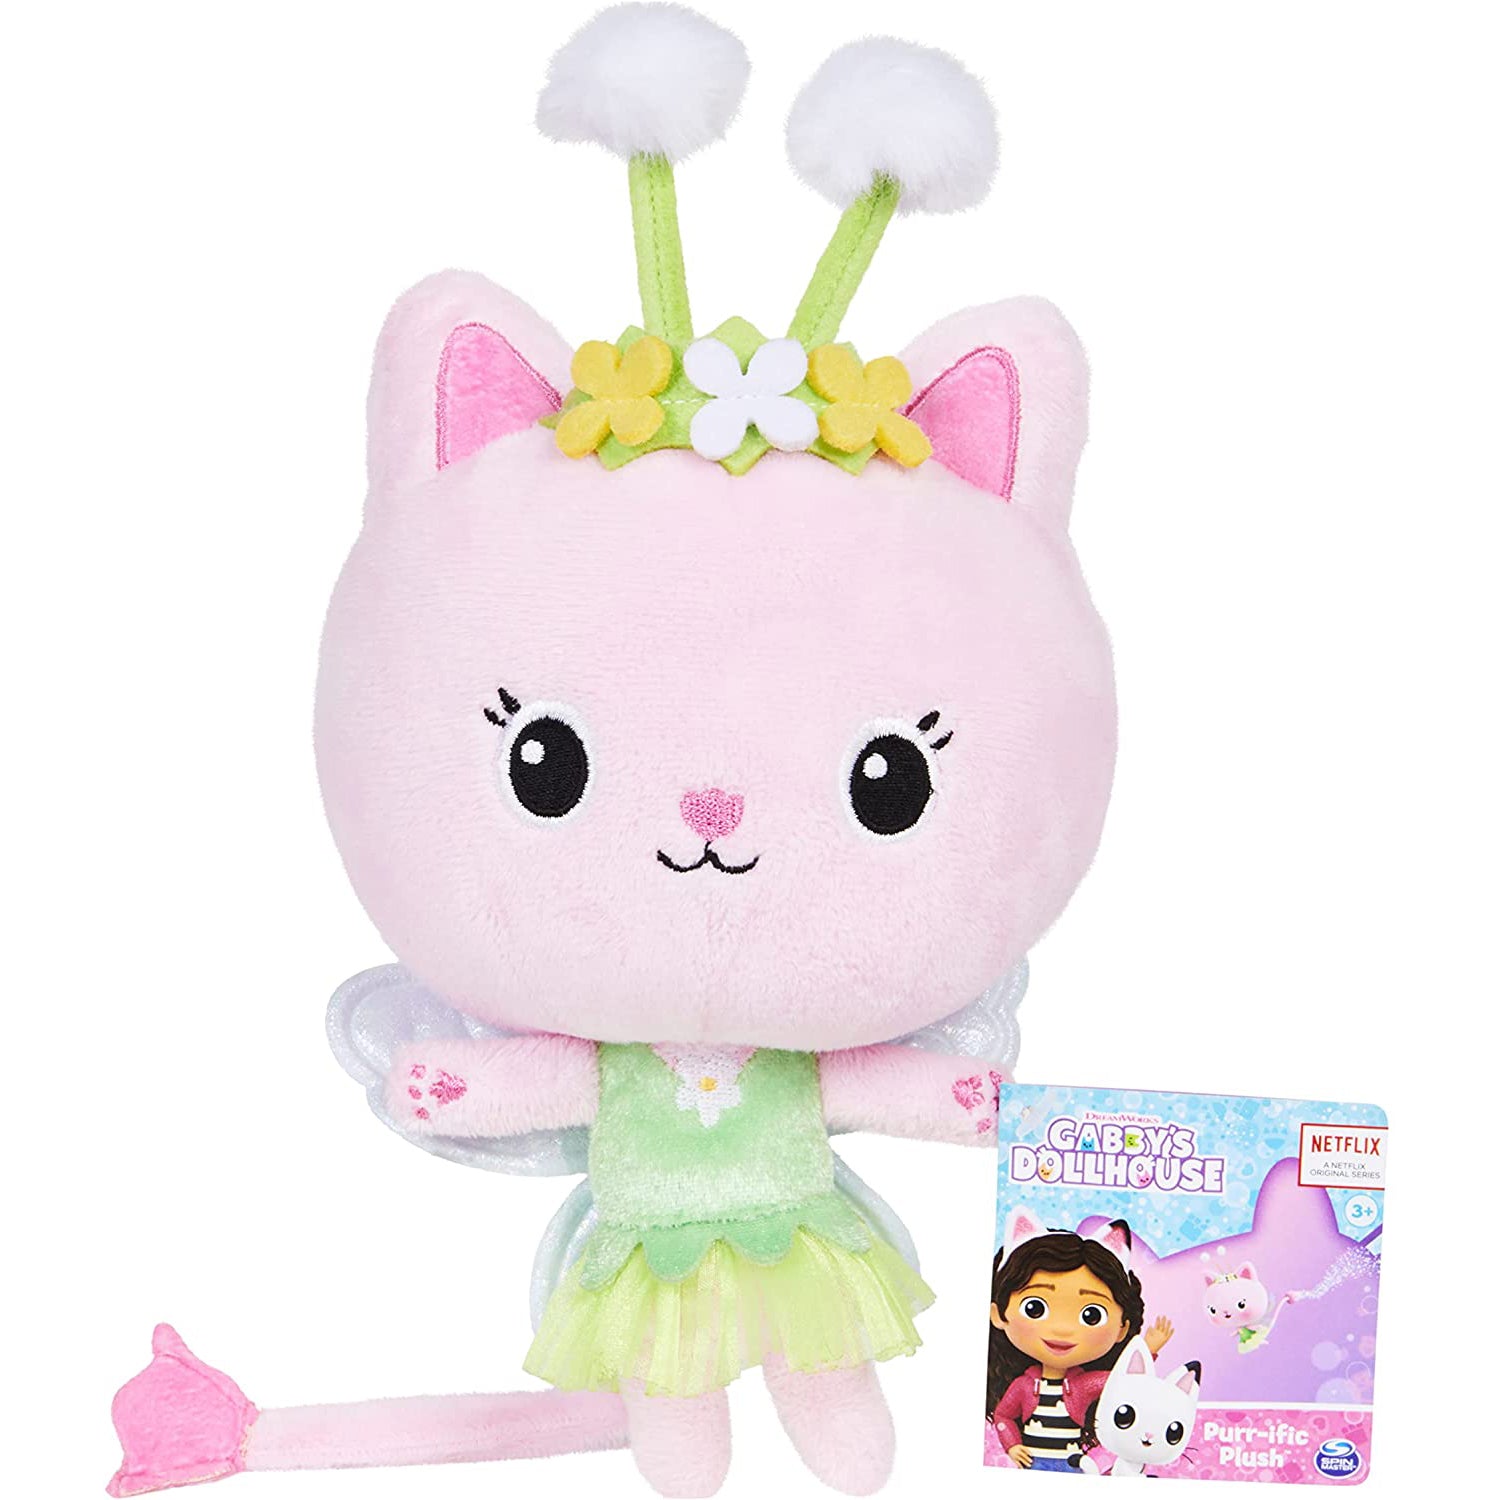 Gabby's Dollhouse 7 Inch Plush - Kitty Fairy